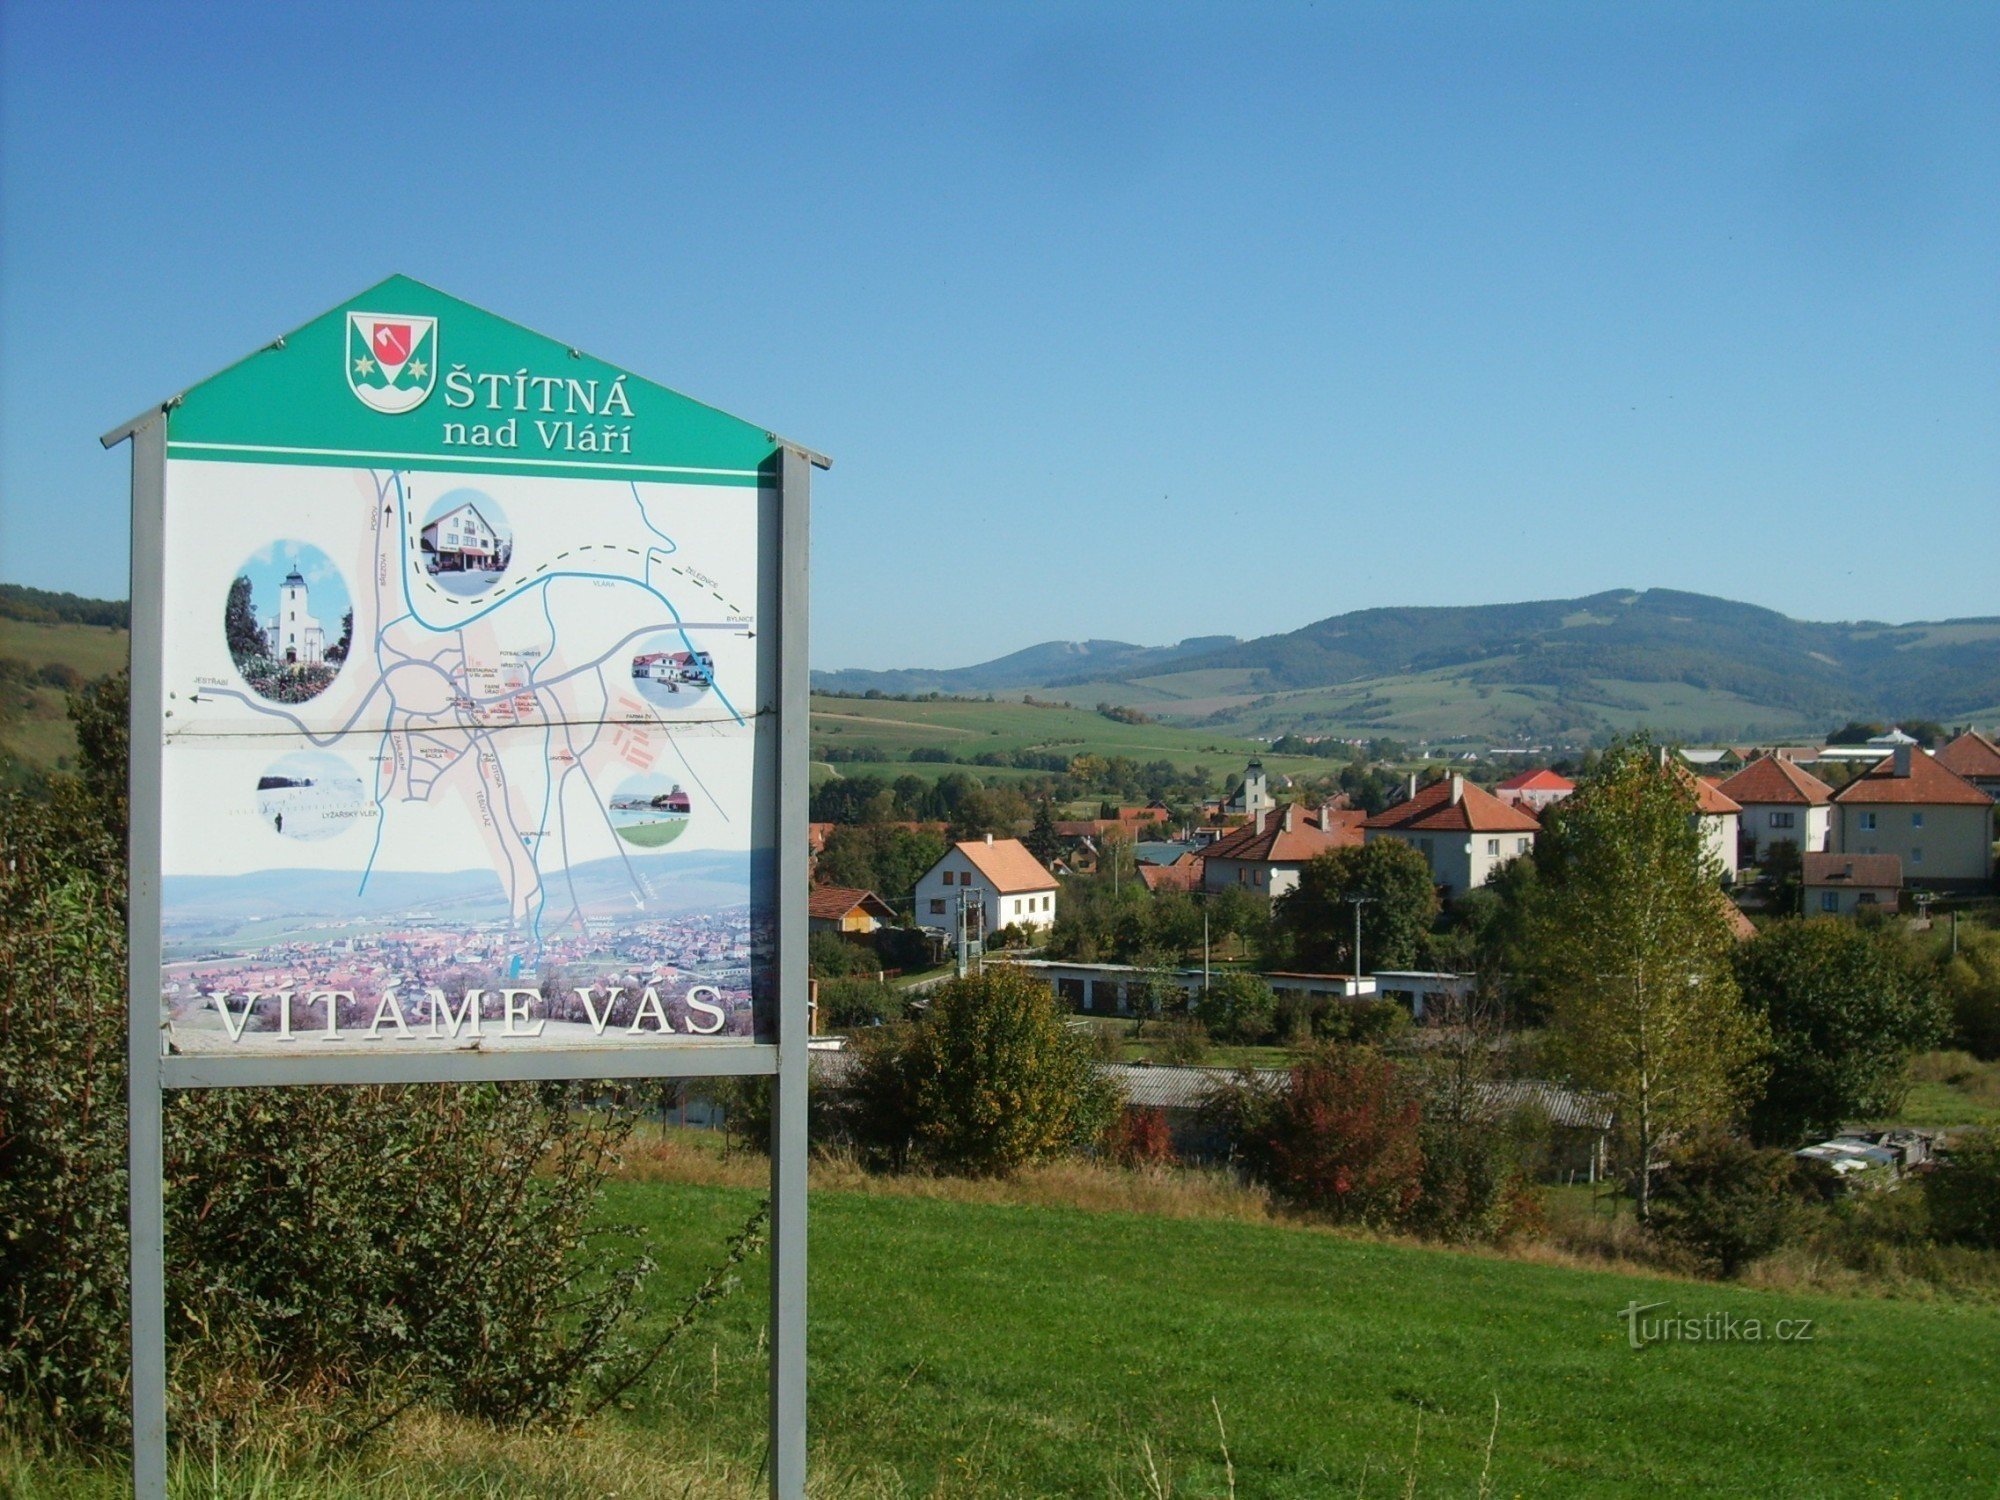 widok na wieś Štítna nad Vláří z kościołem